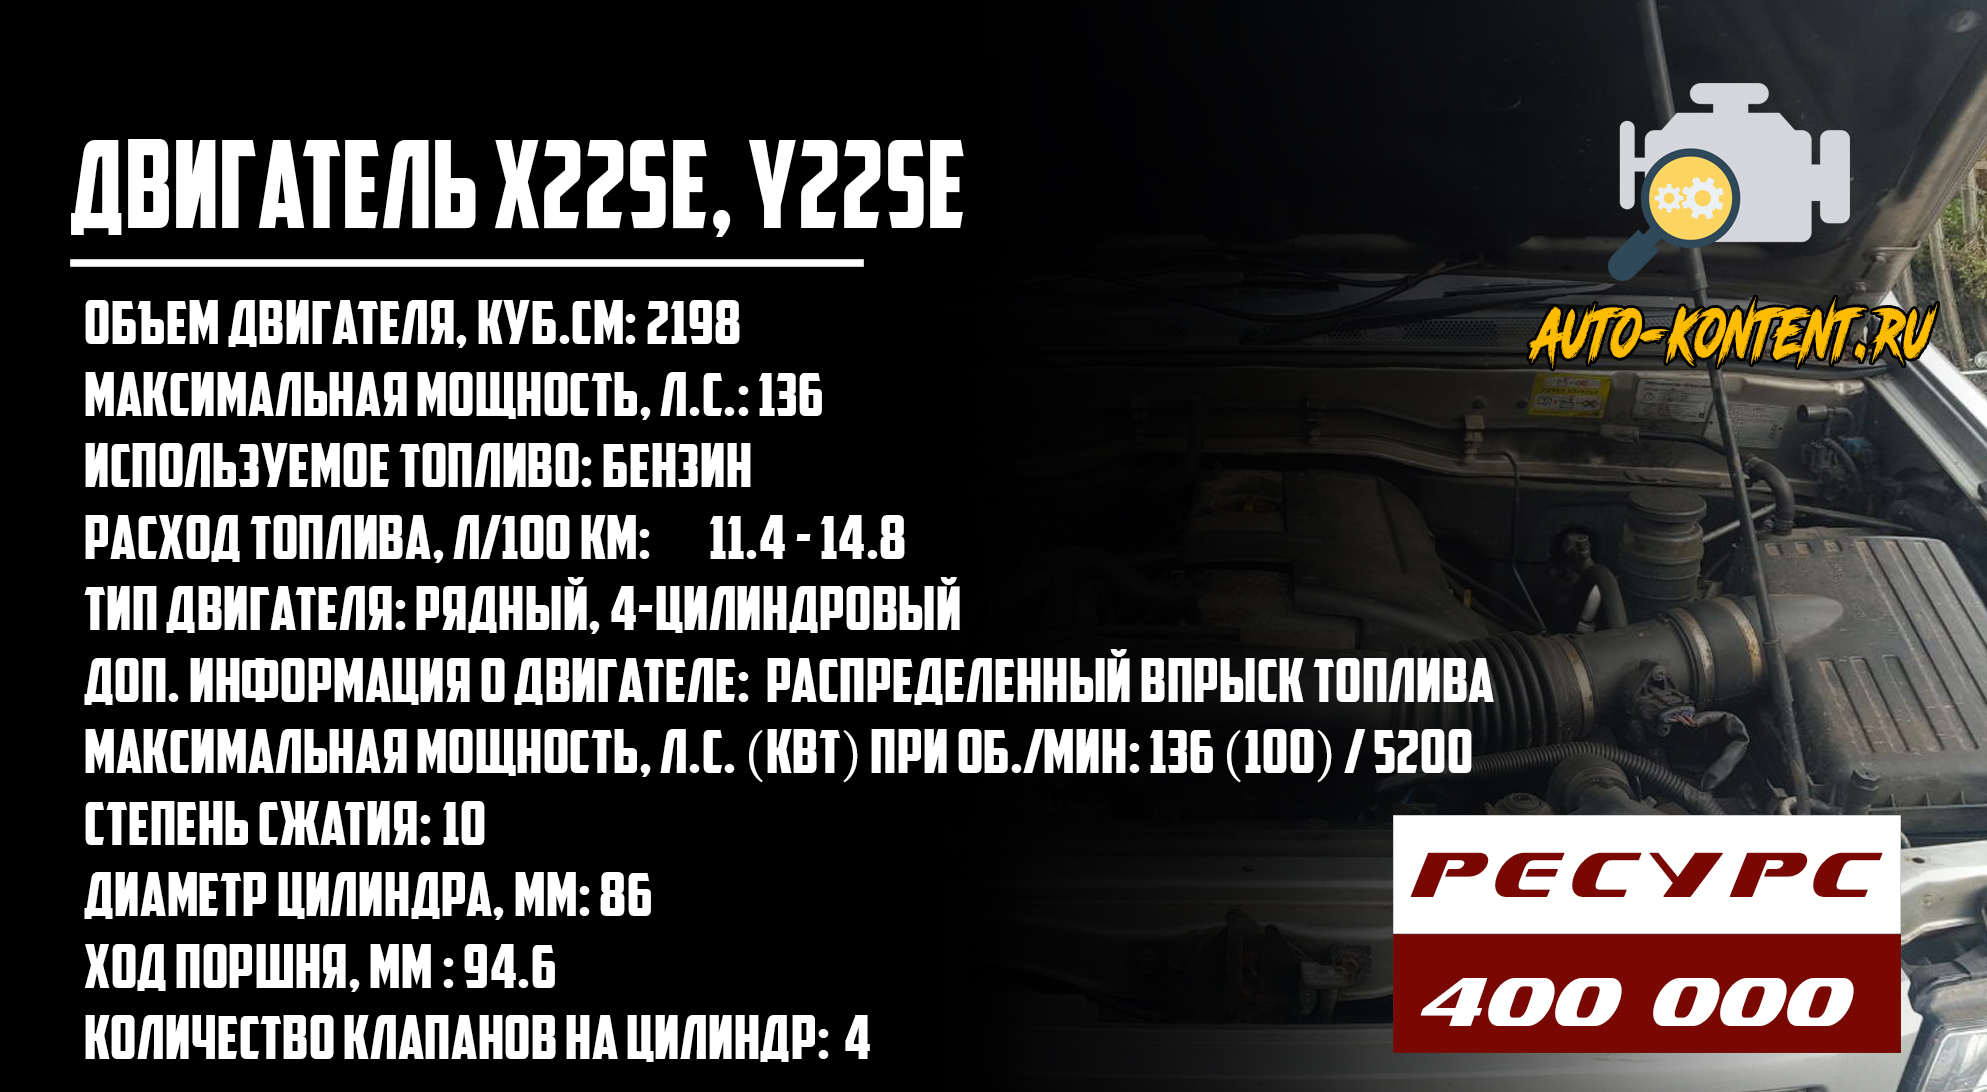 X22SE, Y22SE